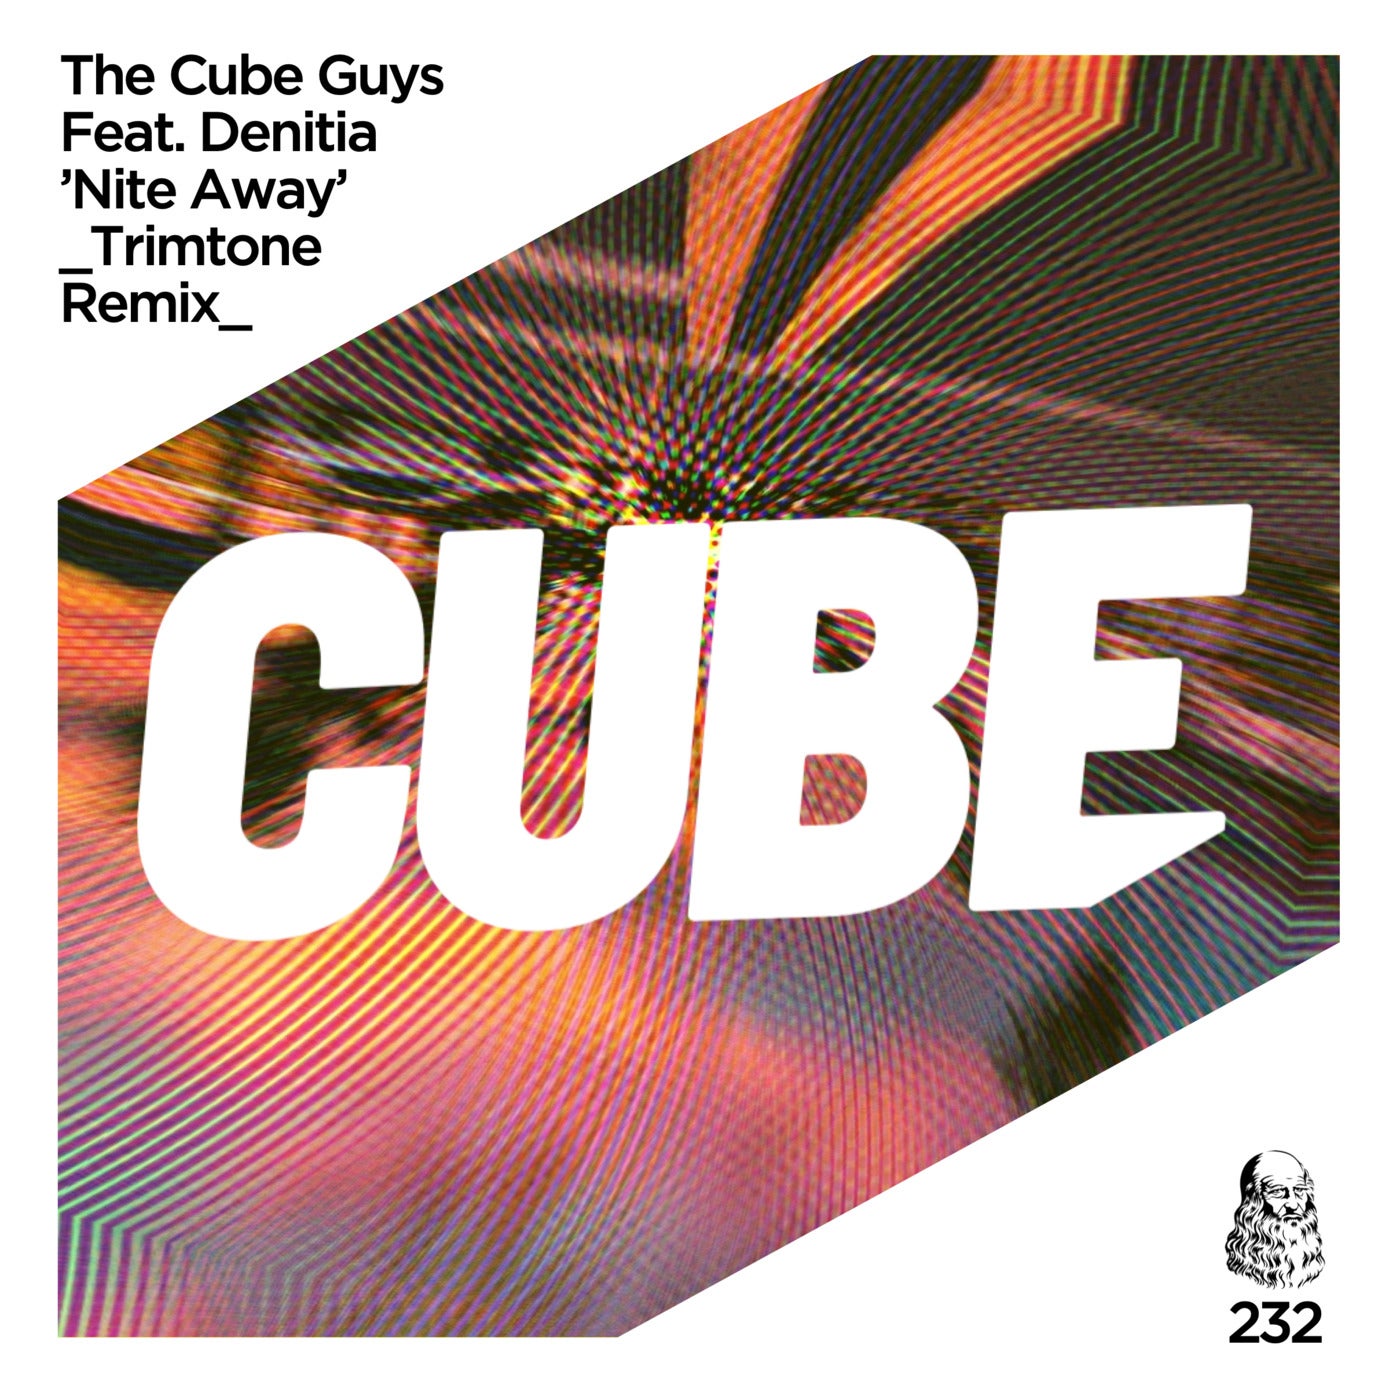 Cube remix. The Cube guys. Cube guys группа. Denitia. Vanotek feat. Denitia - someone.